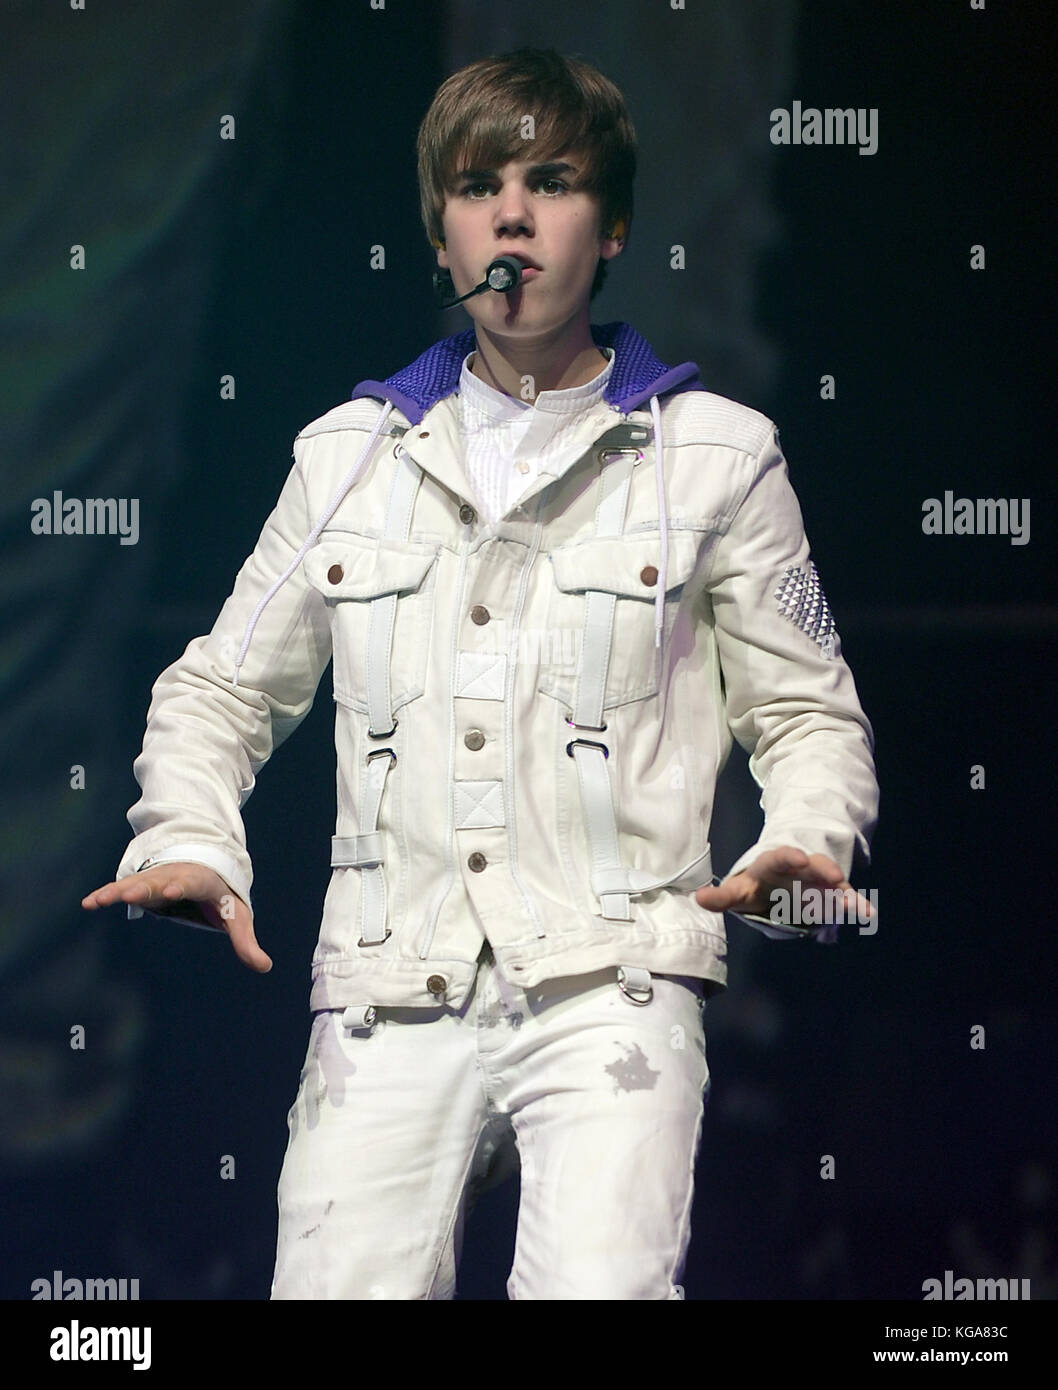 Justin Bieber konzertiert in der American Airlines Arena in Miami Florida. Dezember 2010. Personen: Justin Bieber Kredit: Hoo-Me.com/MediaPunch Stockfoto